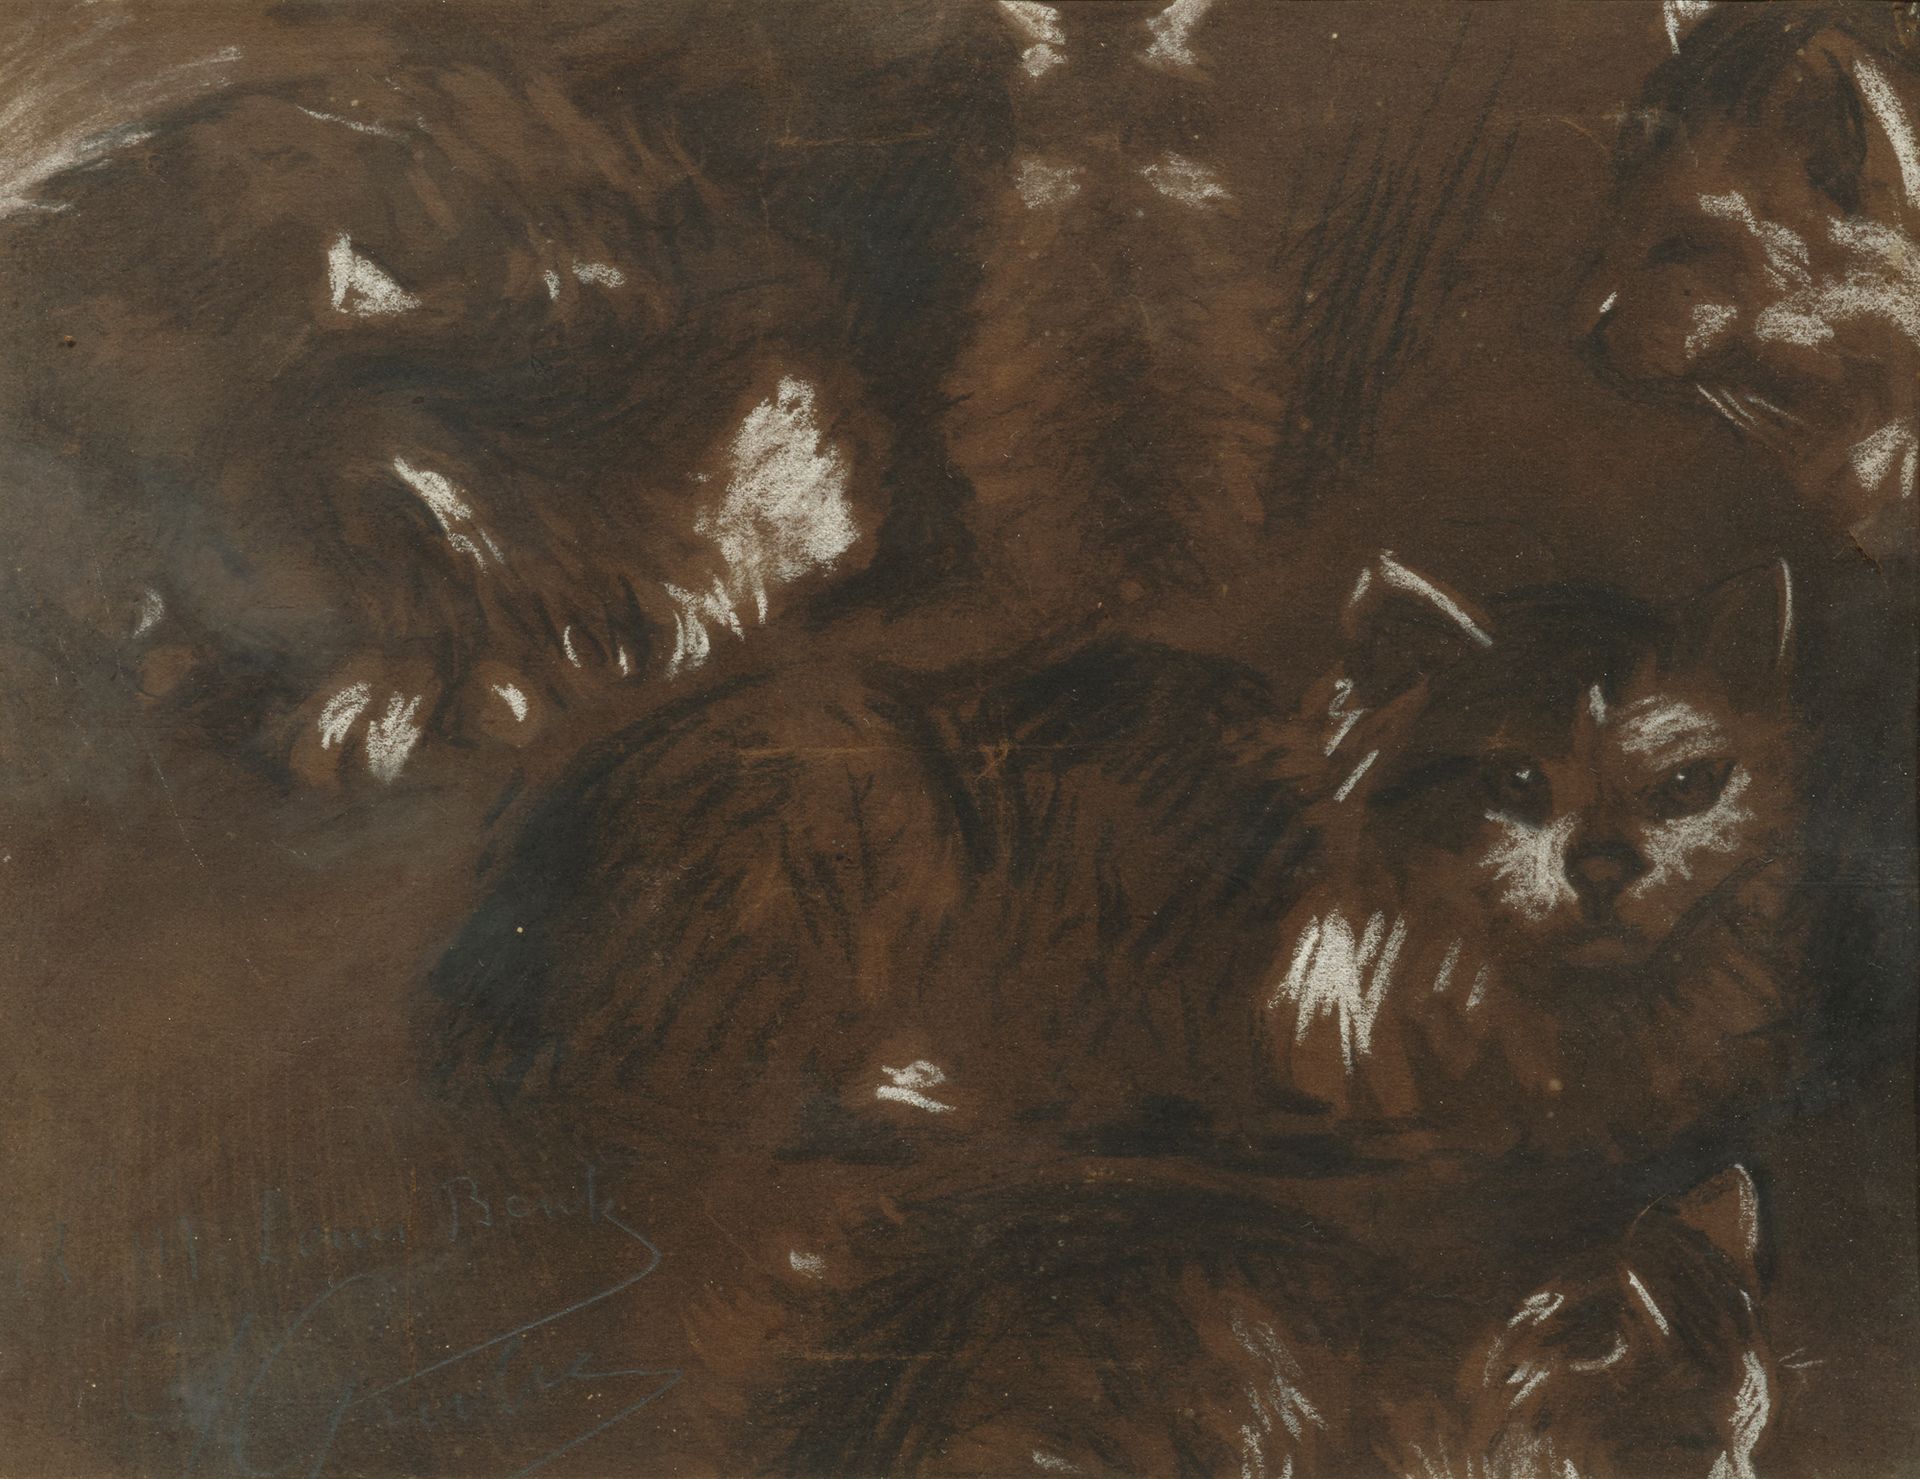 Jacques GRUBER (1870-1936) 猫
纸上混合媒介
左下方有签名和献词
23 x 29 厘米

出处：格鲁伯家族